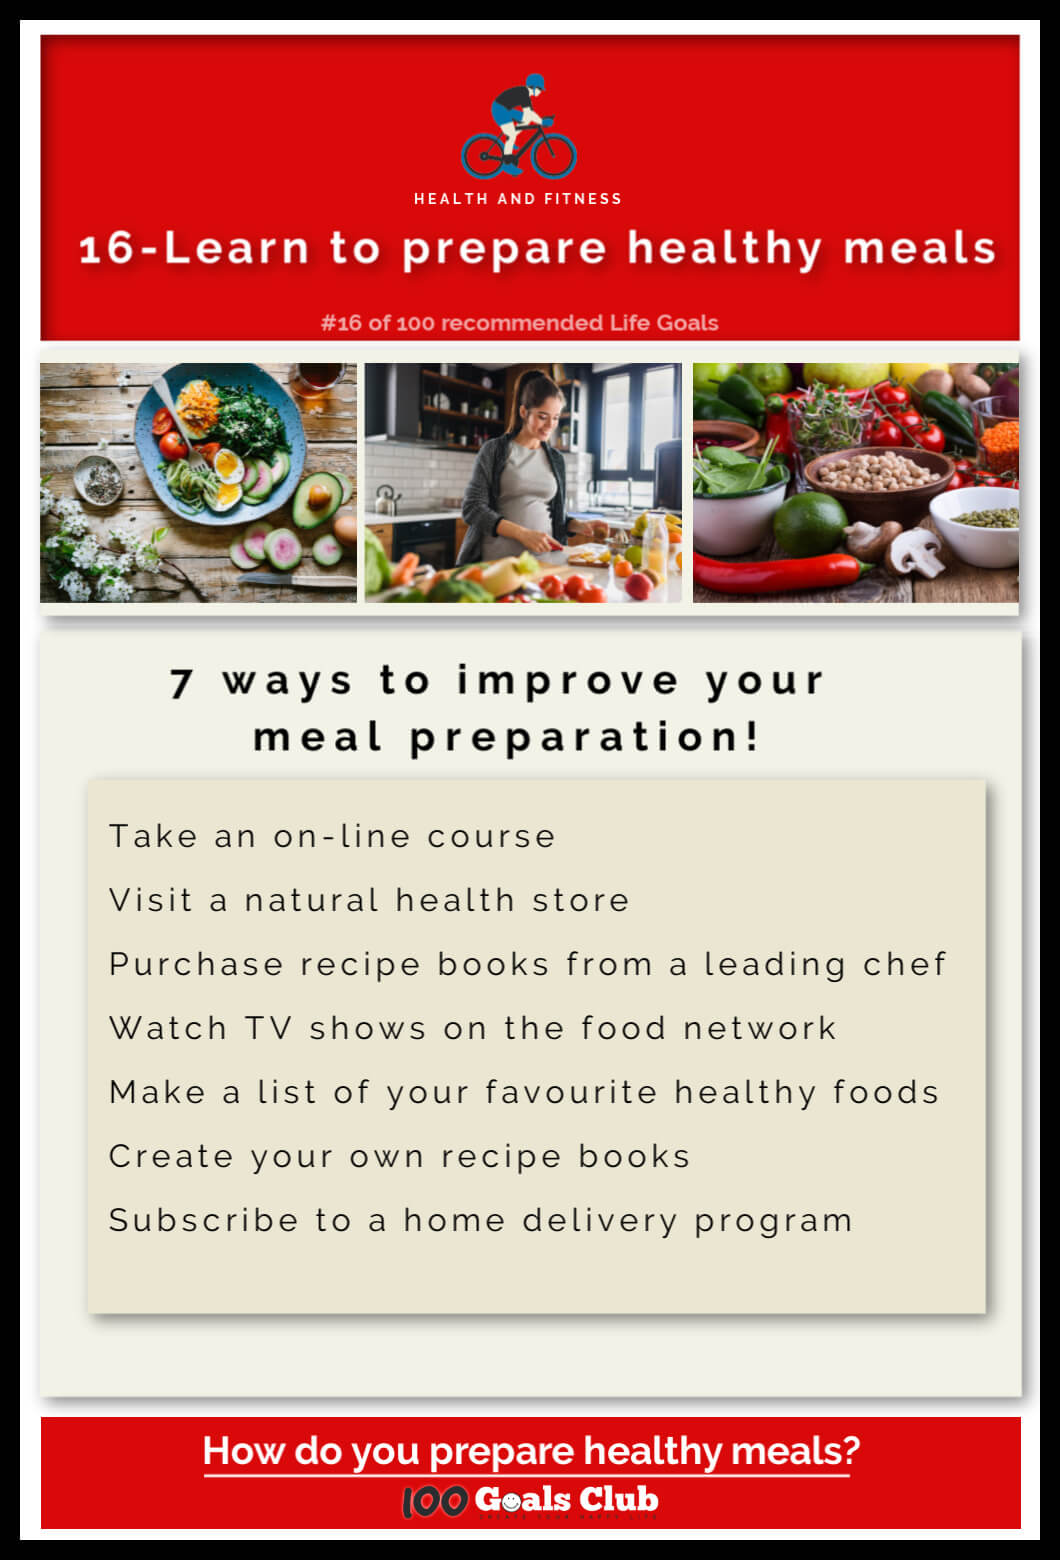 Prepare healthy meals